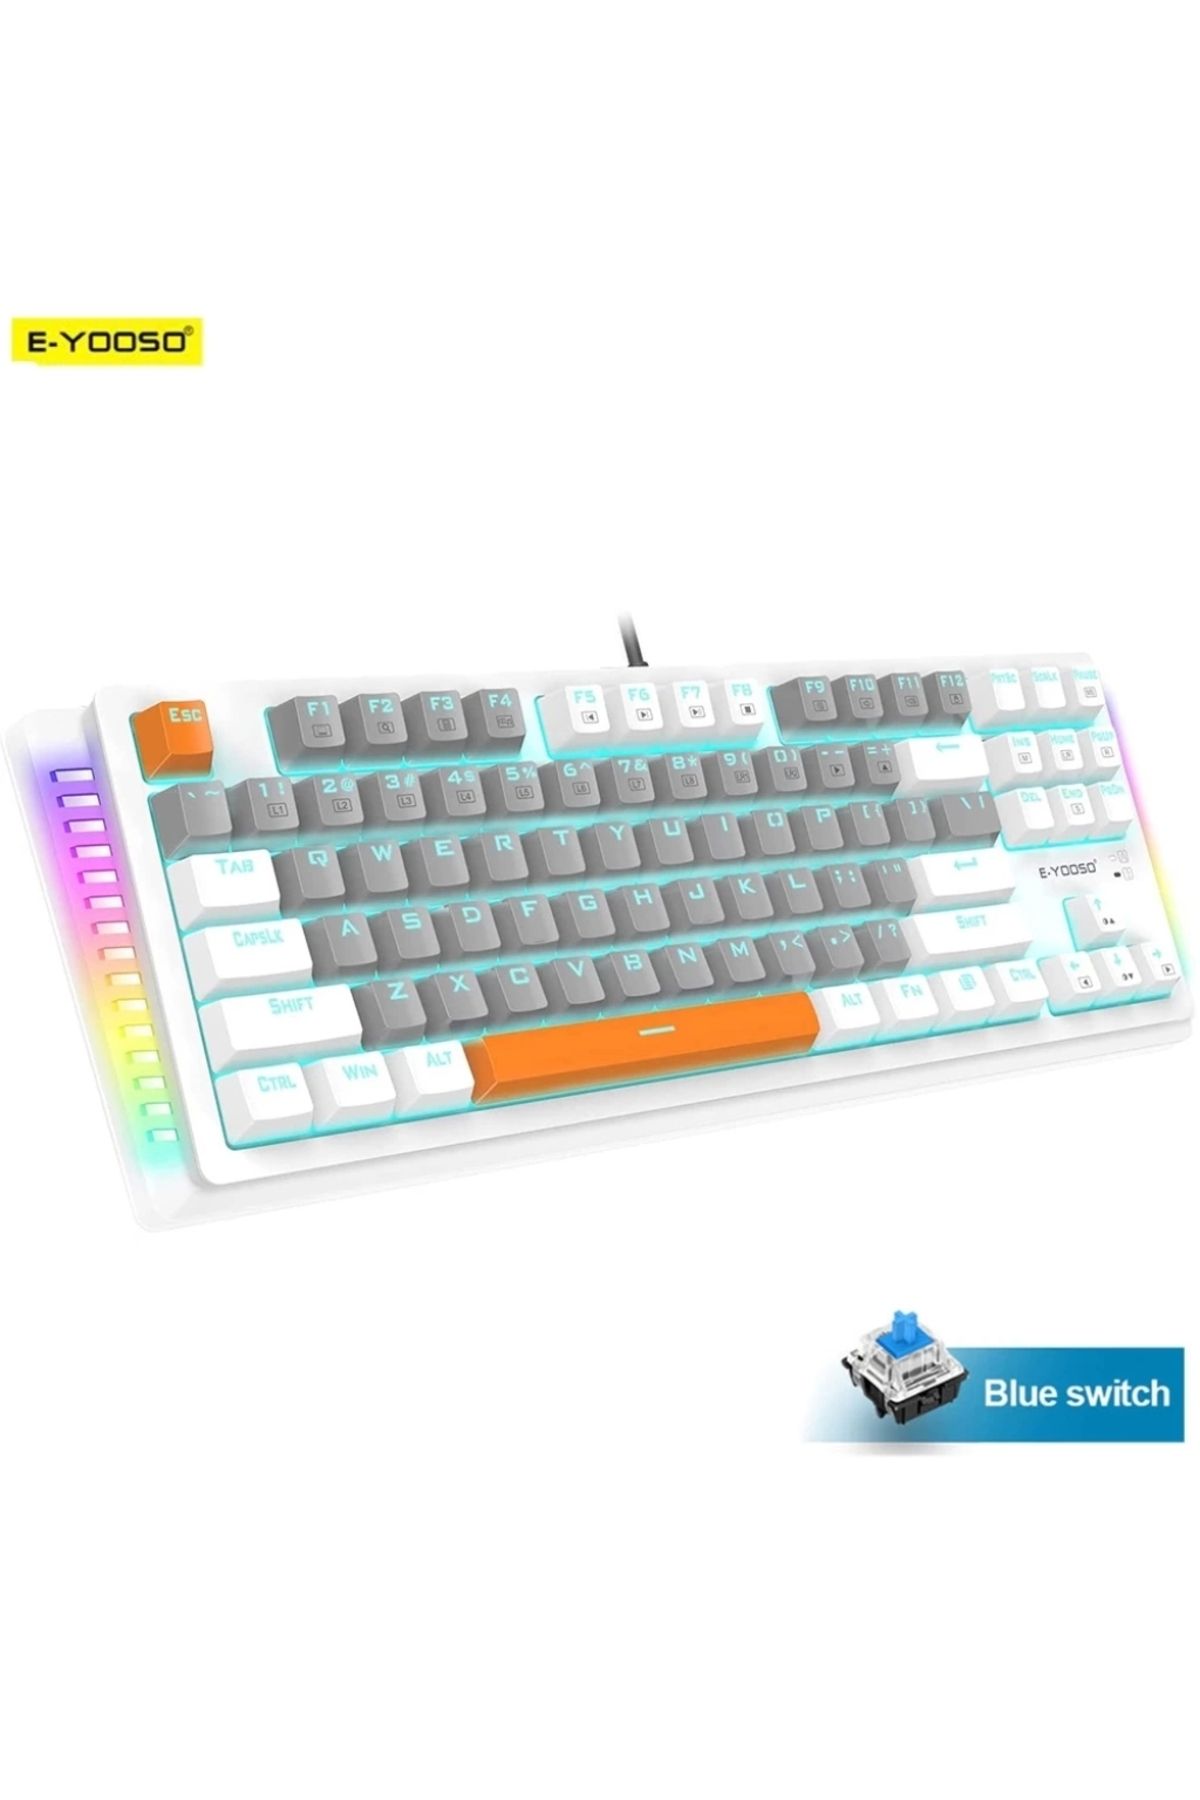 e-yooso K620 Mekanik Klavye Blue Switch Siyah Ve Beyaz Klavye Seçeneği